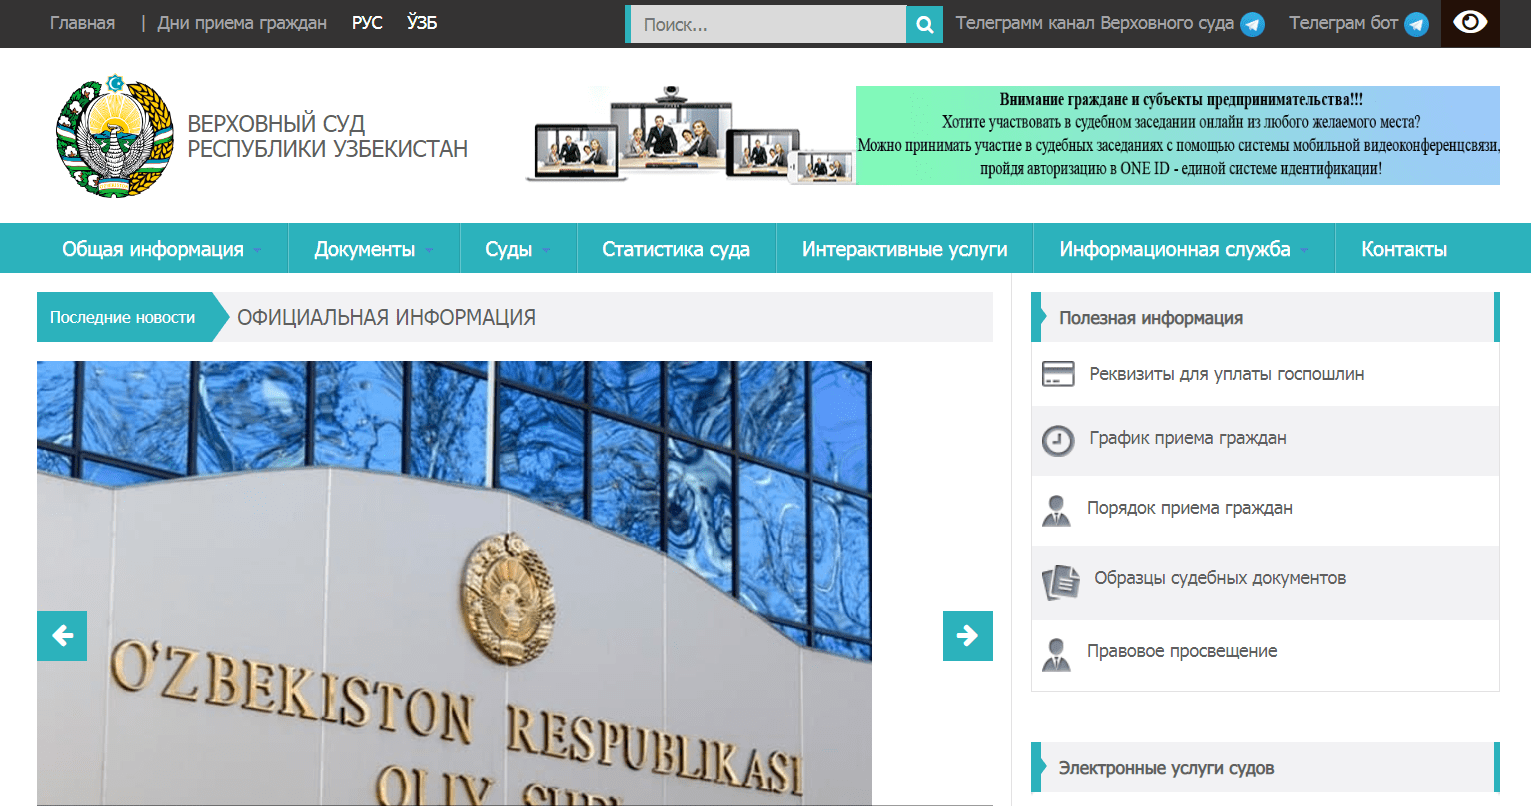 Верховный суд Республики Узбекистан (my.sud.uz) - интерактивные услуги, официальный сайт